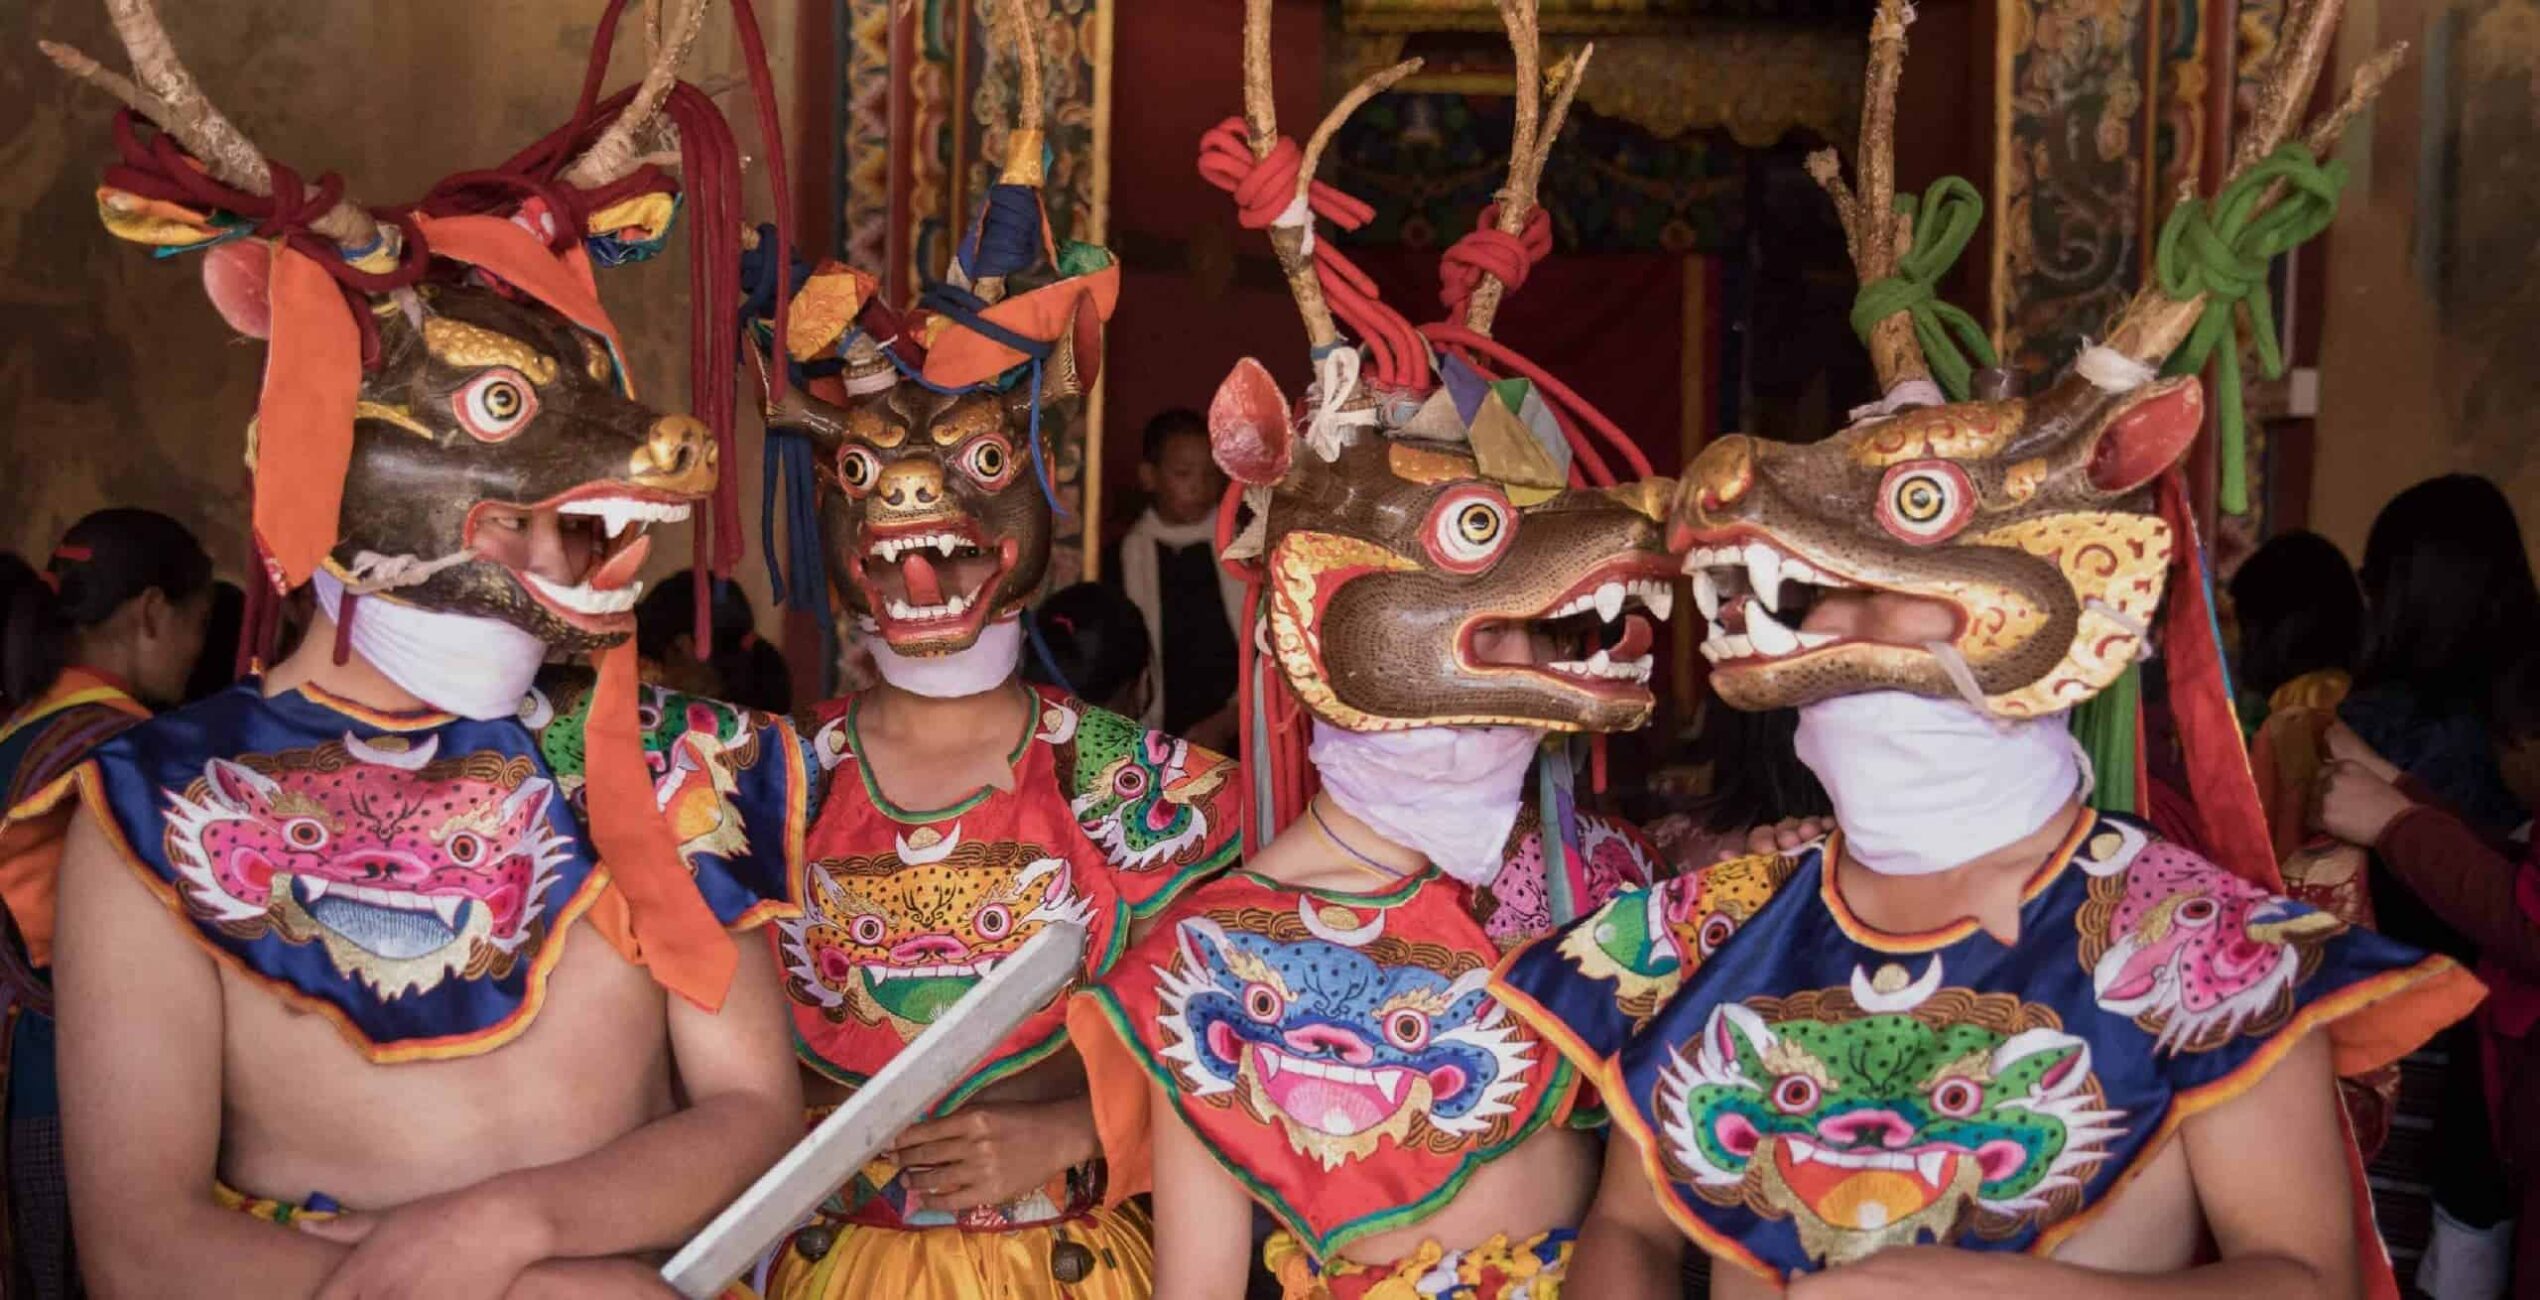 The Punakha Tsechu festival